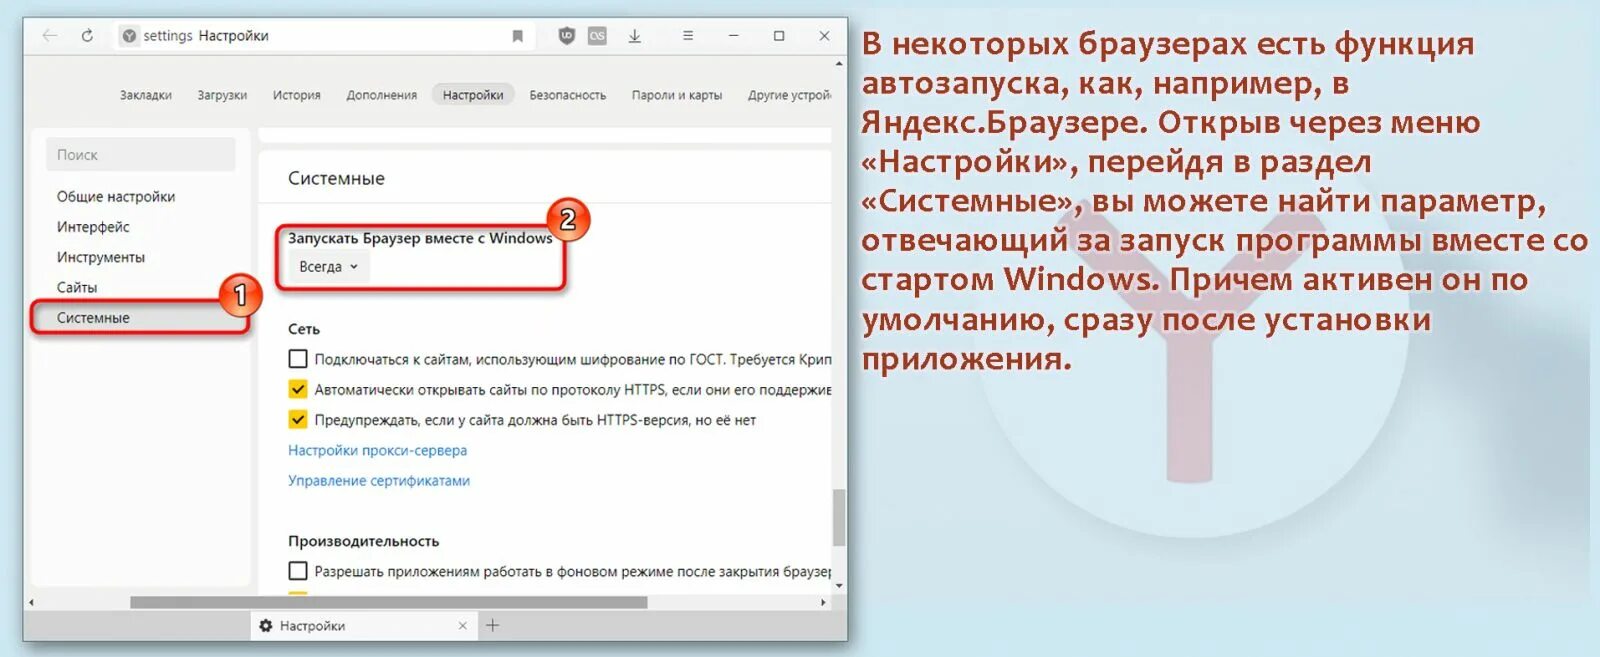 Автозапуск браузера. Автозапуск браузера «Яндекс». Отключить автозапуск Яндекс браузера. Как отключить автозапуск Яндекс браузера на виндовс 7. Как отключить автозапуск Яндекса при включении компьютера.